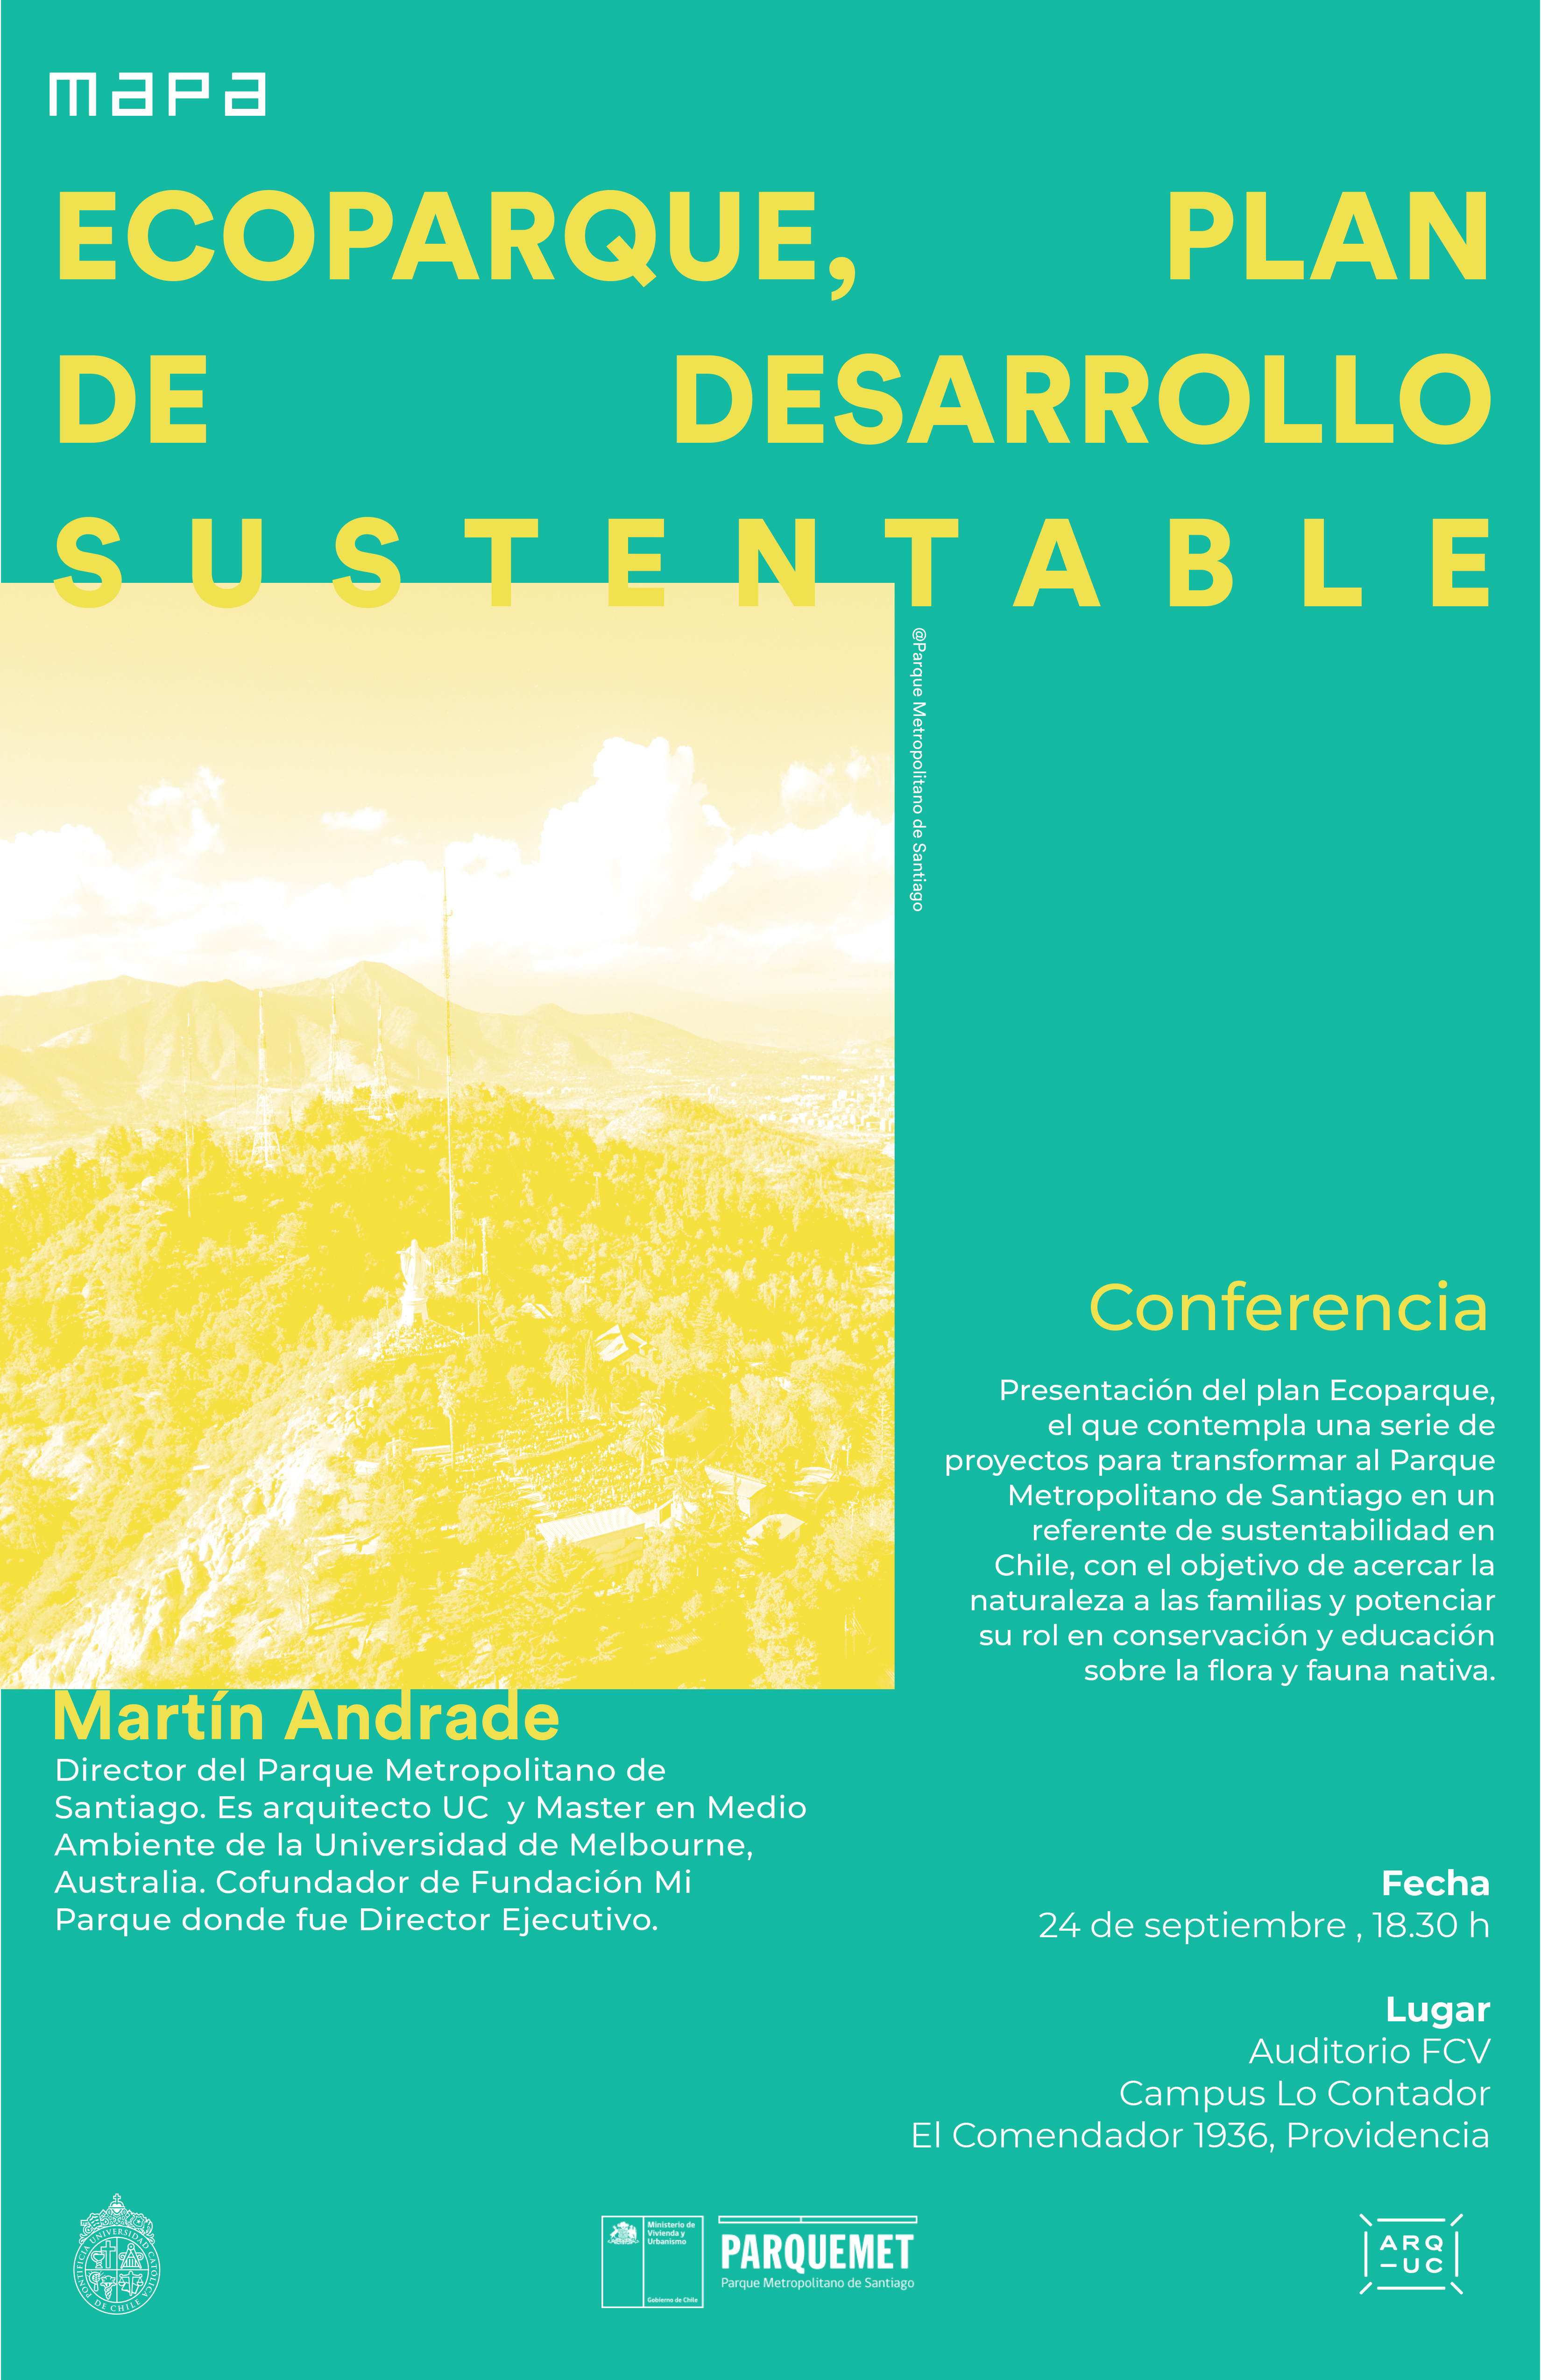 20190924_Conferencia_Eco_Parque_Martin_Andrade_afiche.jpg